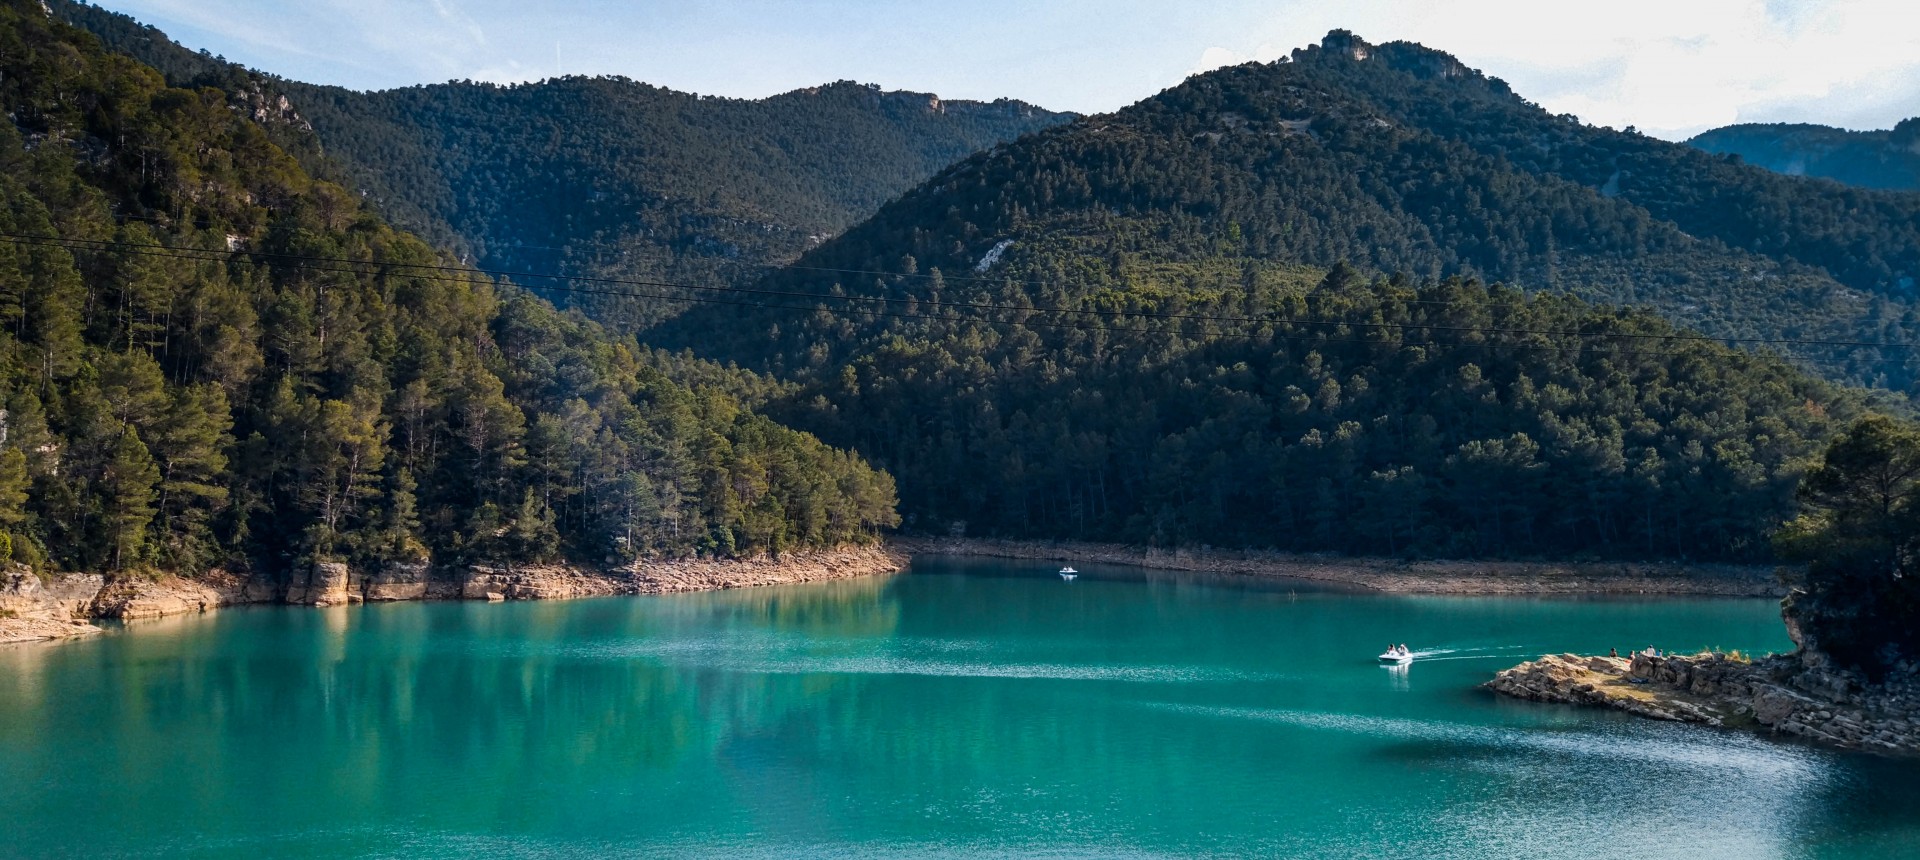 Embalse de Ulldecona uno de los mejores miradores de Castellón sorprende con su agua de color turquesa en medio de la naturaleza